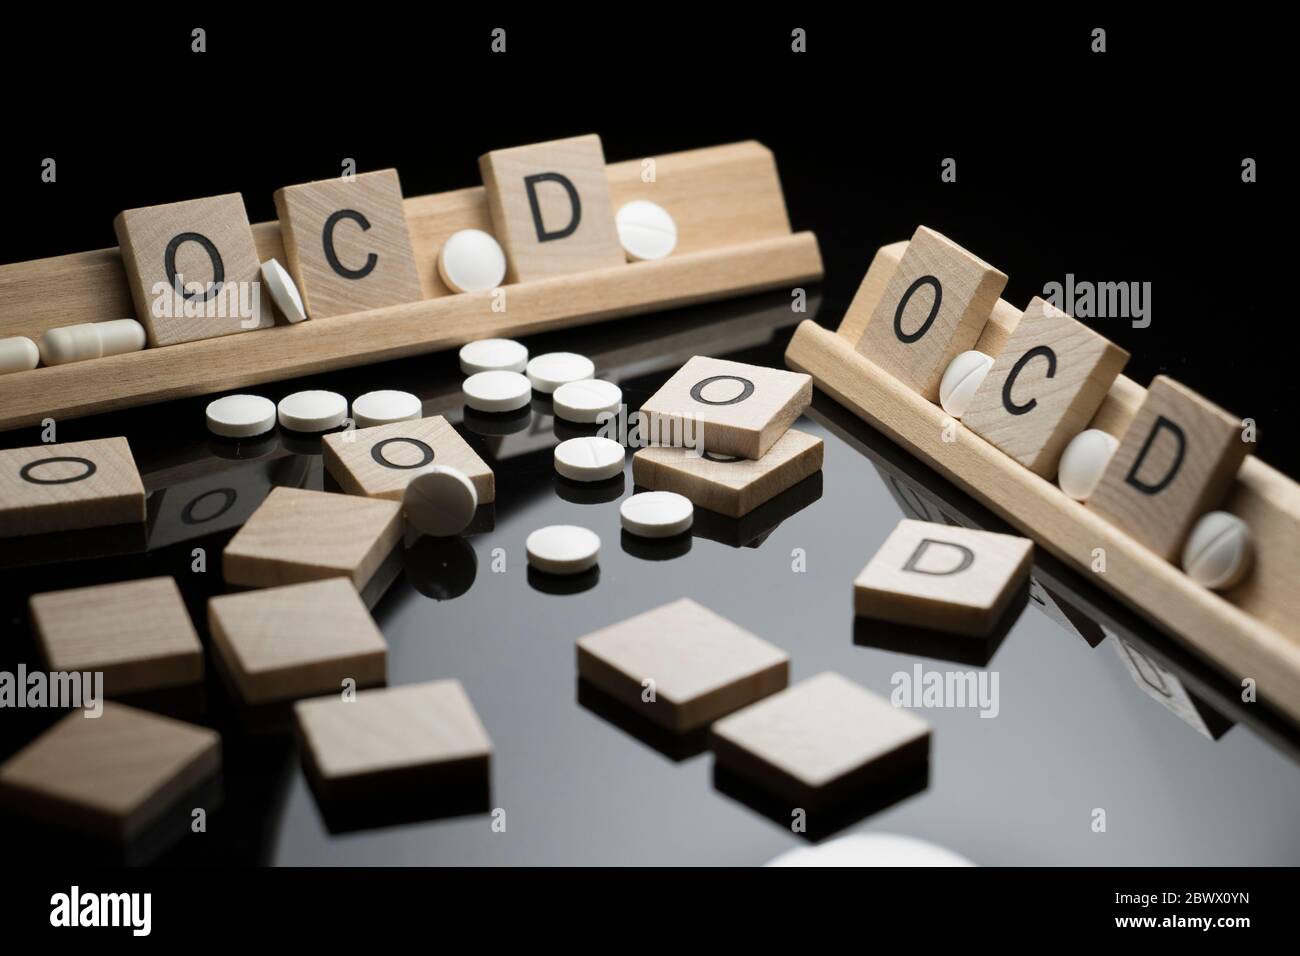 Concetto OCD scritto in testo con farmaci farmaceutici su una tavola nera. Disturbo ossessivo compulsivo e problemi di salute comportamentale. Foto Stock